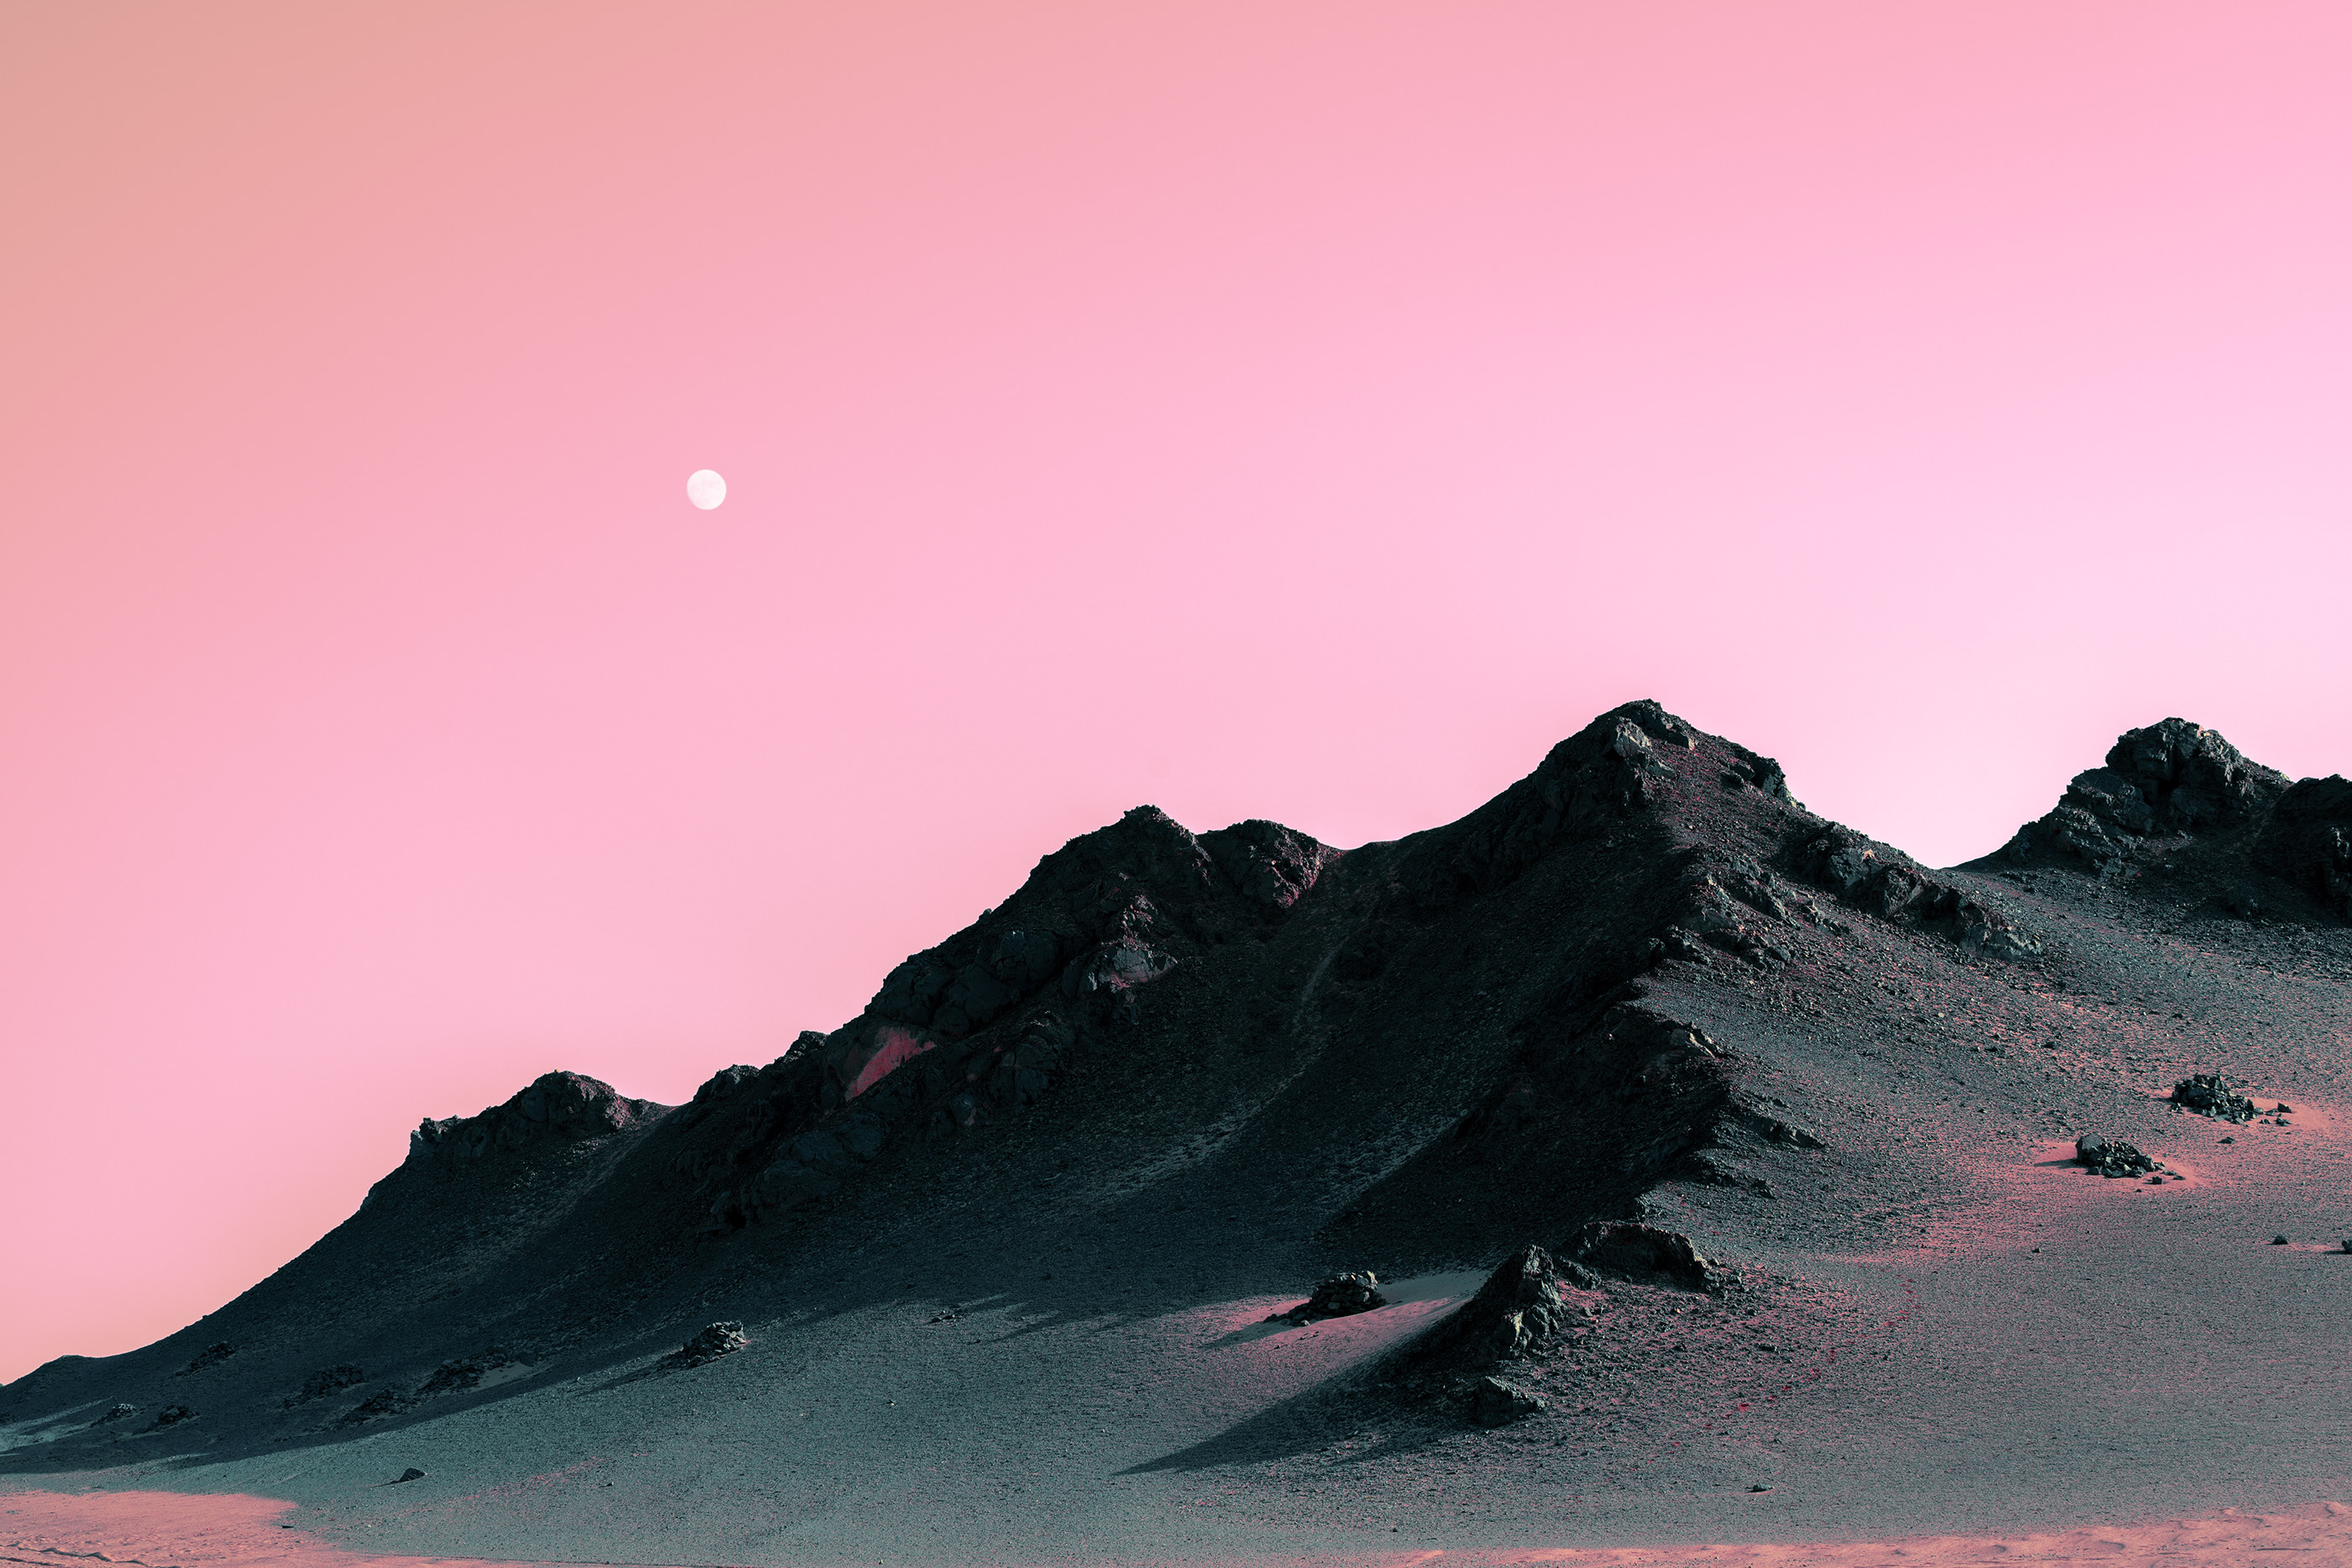 General 2800x1867 desert Gobi Desert rocks landscape pink sky Moon qinghai